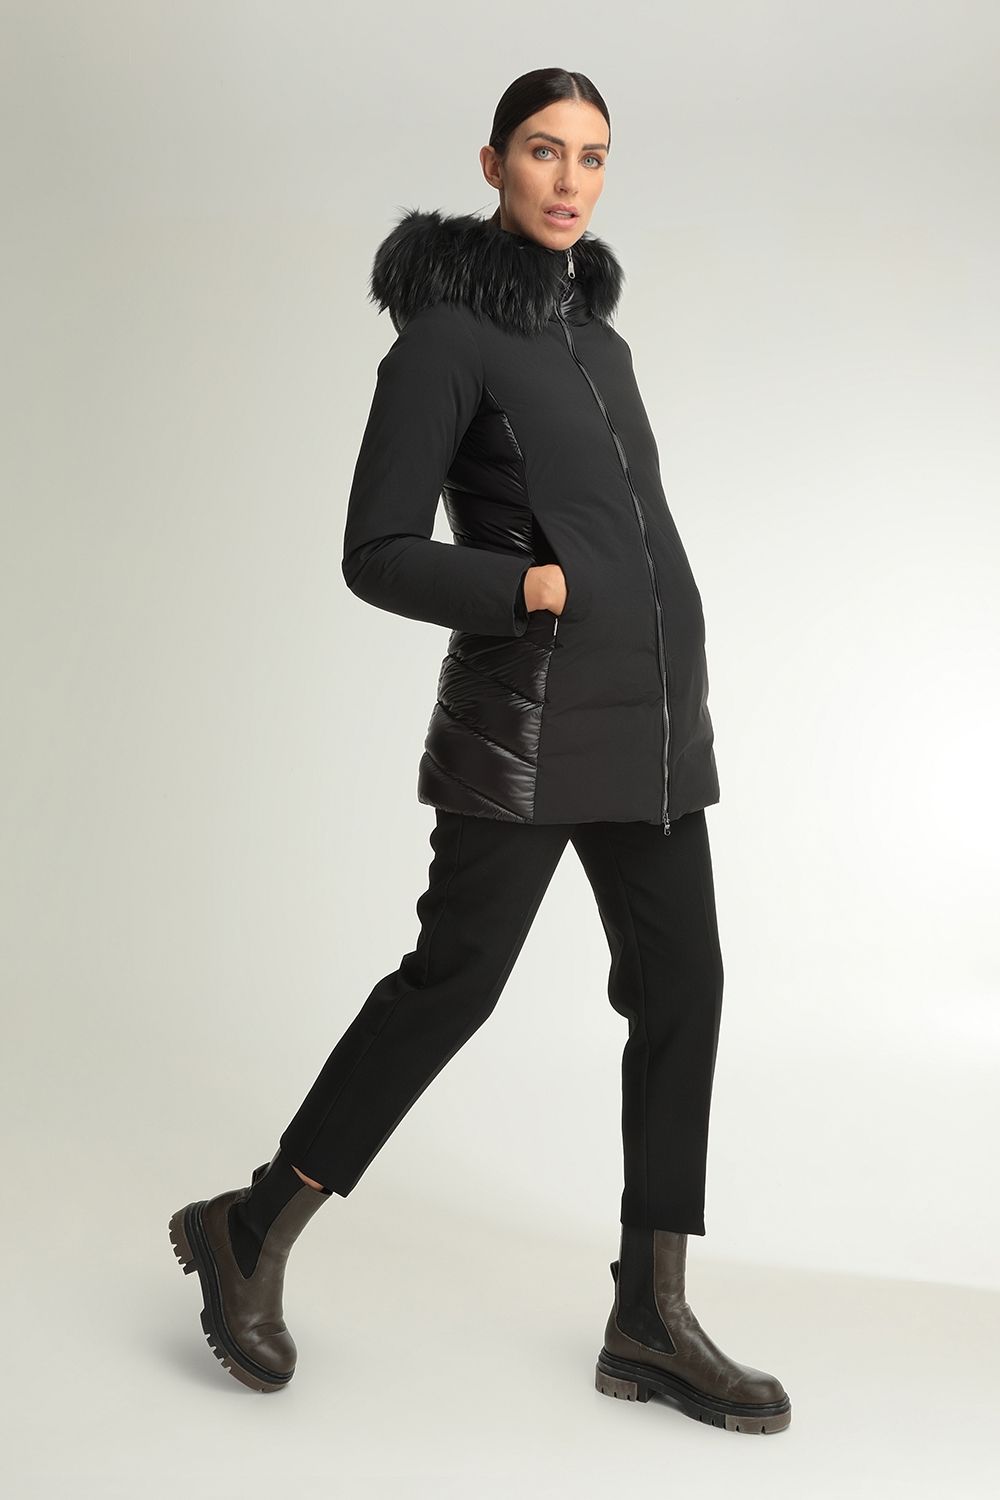 Danielle bi-material black coat